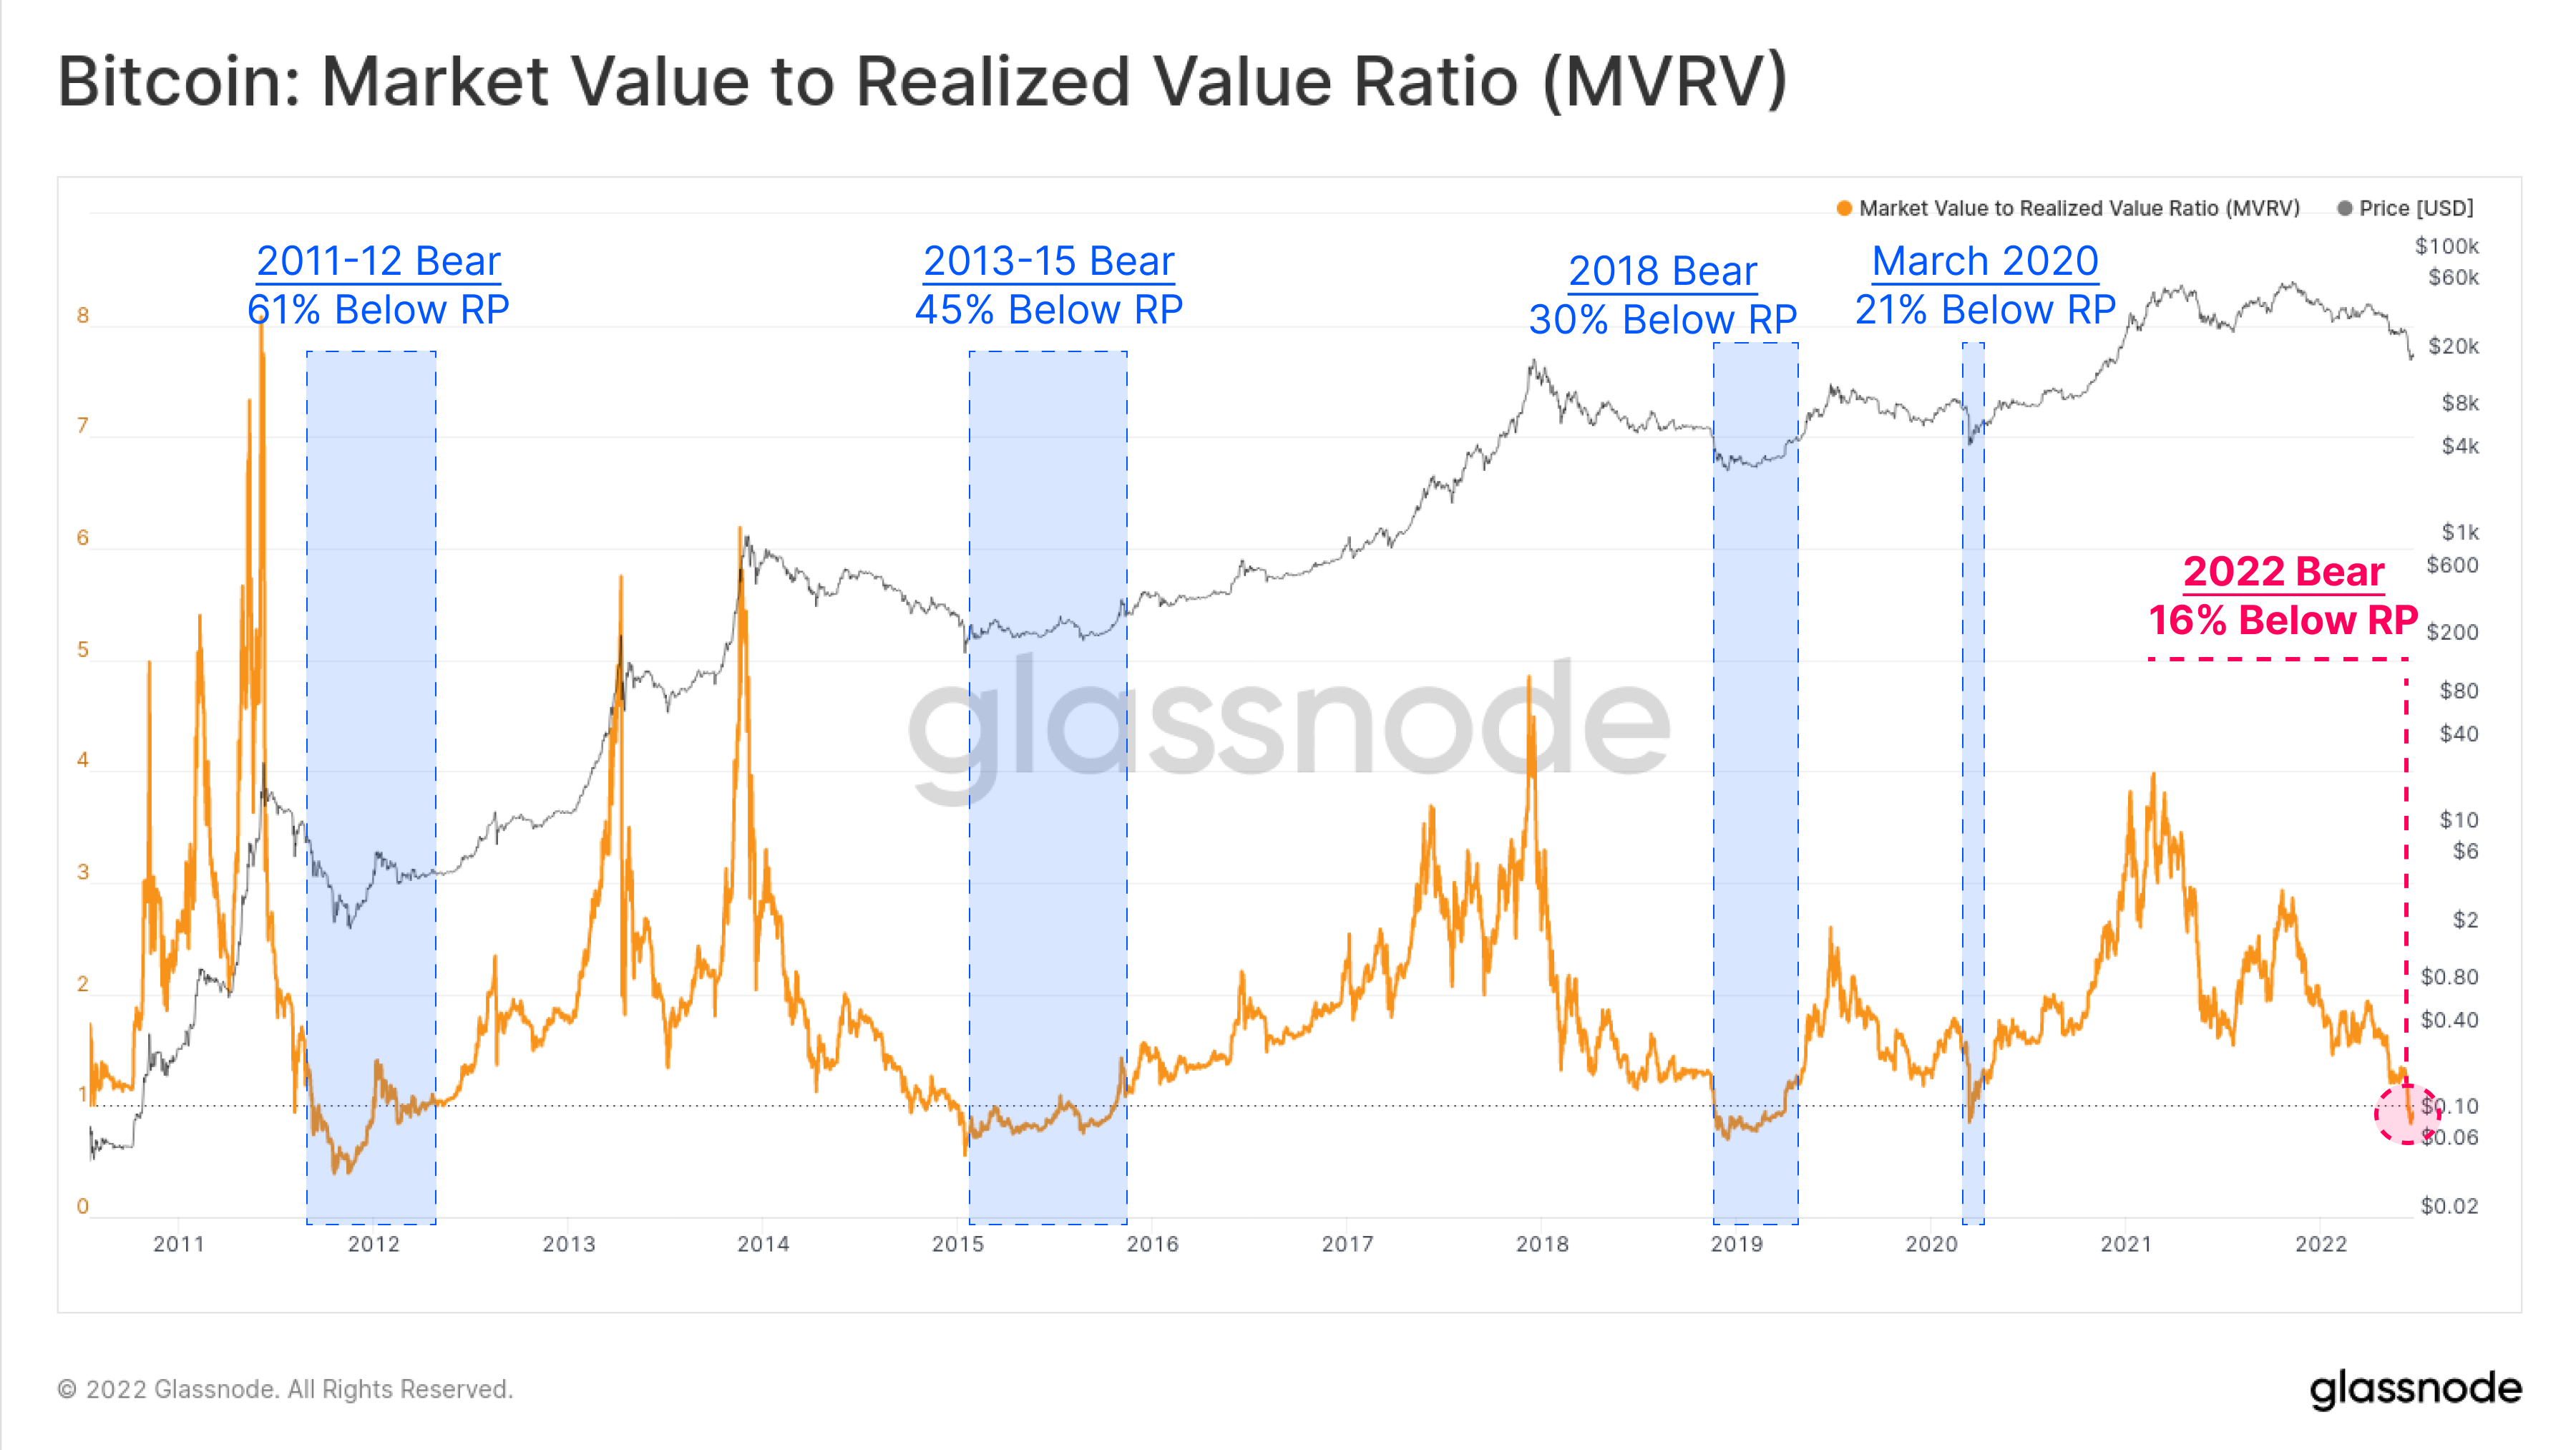 El informe de Glassnode dice que la caída del precio de Bitcoin en 2022 representa un mercado bajista de 